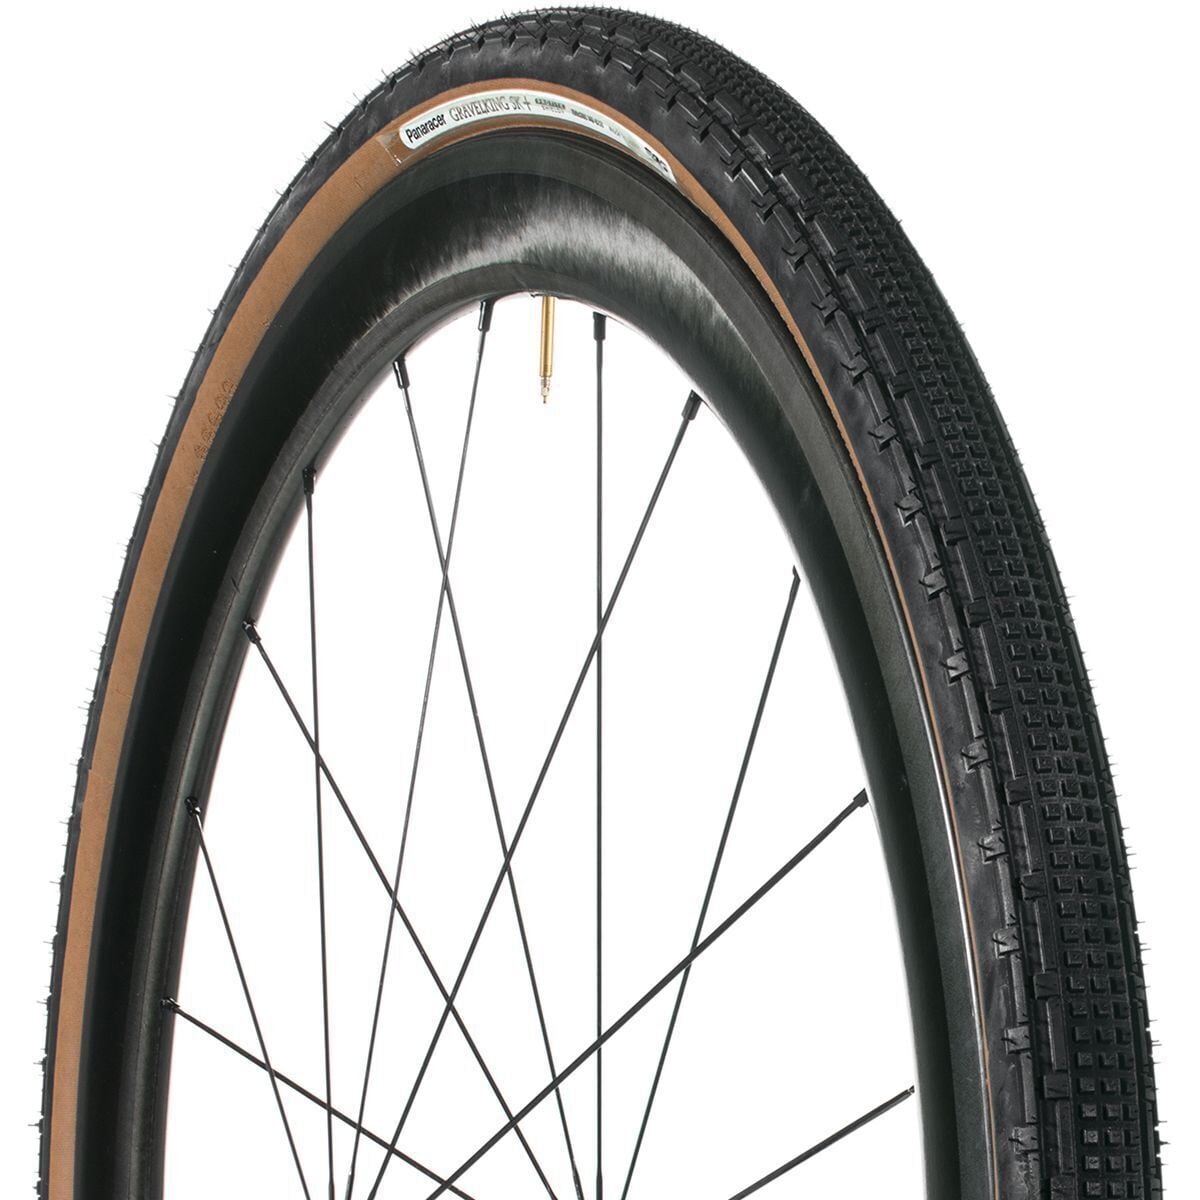 Panaracer Gravelking SK+ Tubeless Tire Black/Brown, 700x35